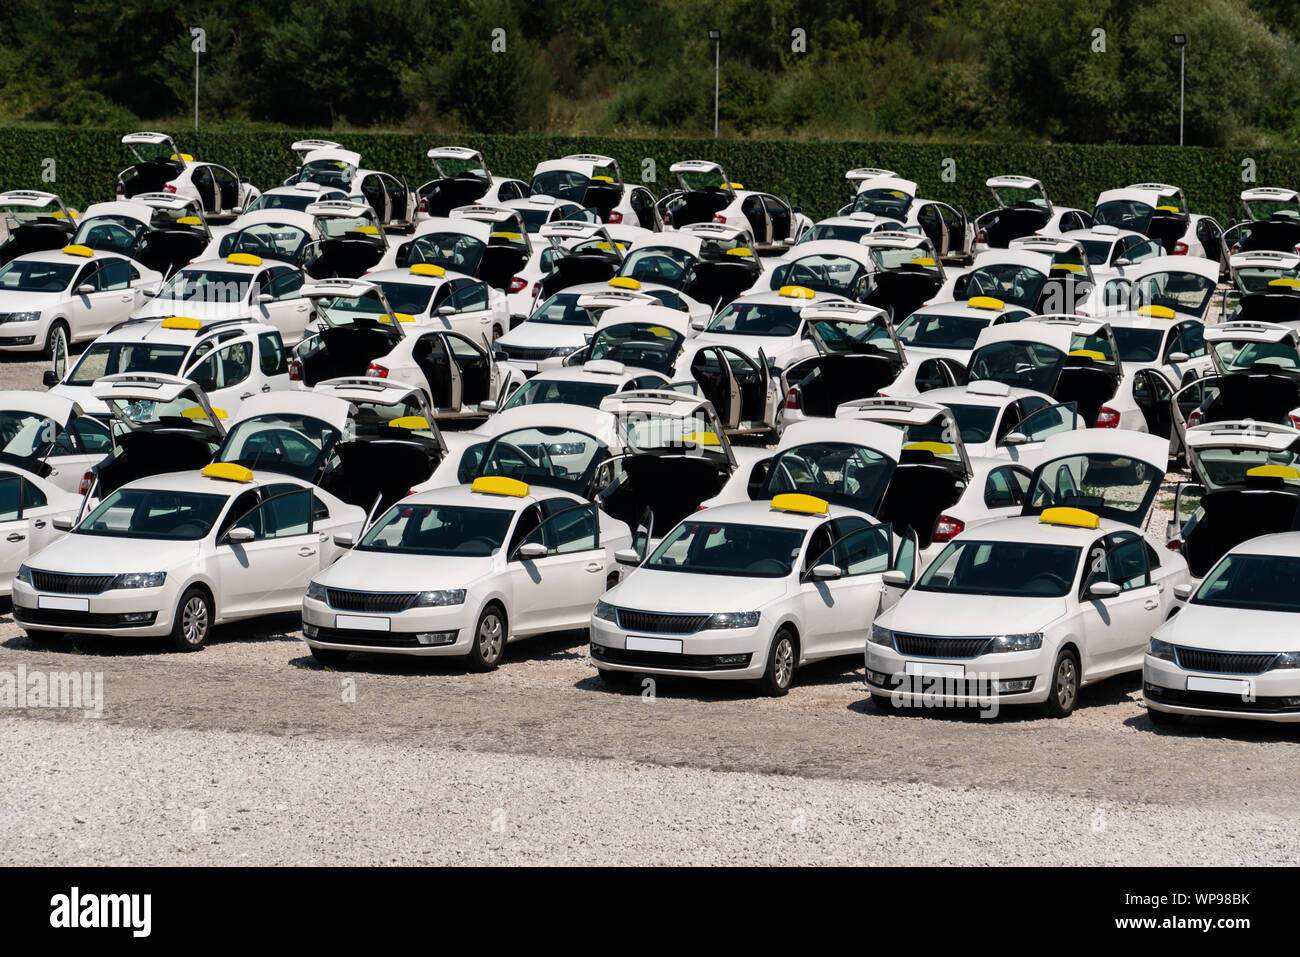 Viele Taxi Autos stehen in Zeilen in einen Parkplatz. Stockfoto